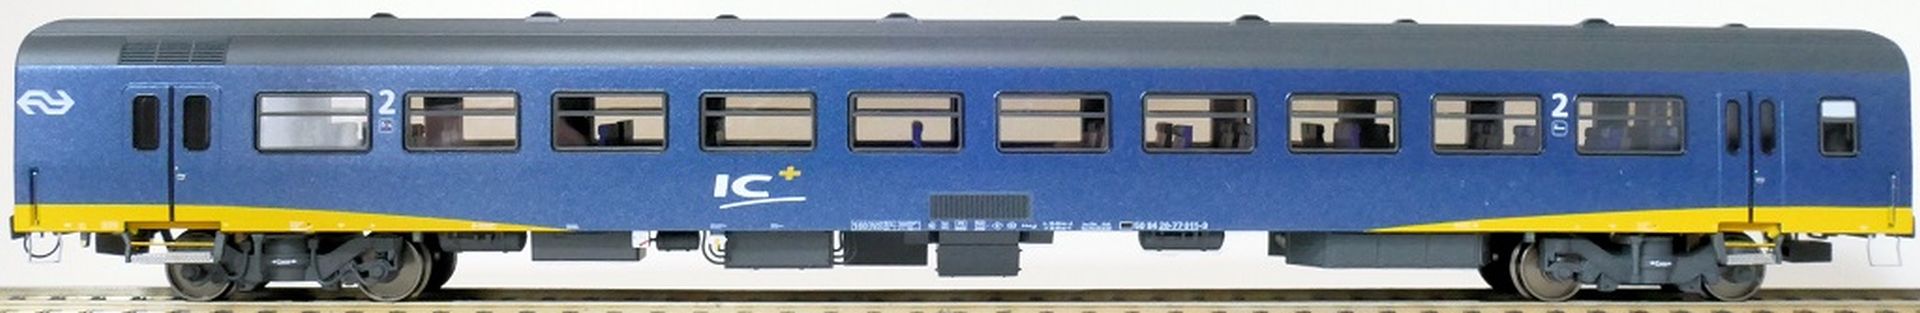 Exact-Train EX11181 - Personenwagen ICR Plus, B, NS, Ep.IV, mit Innenbel. und Figuren